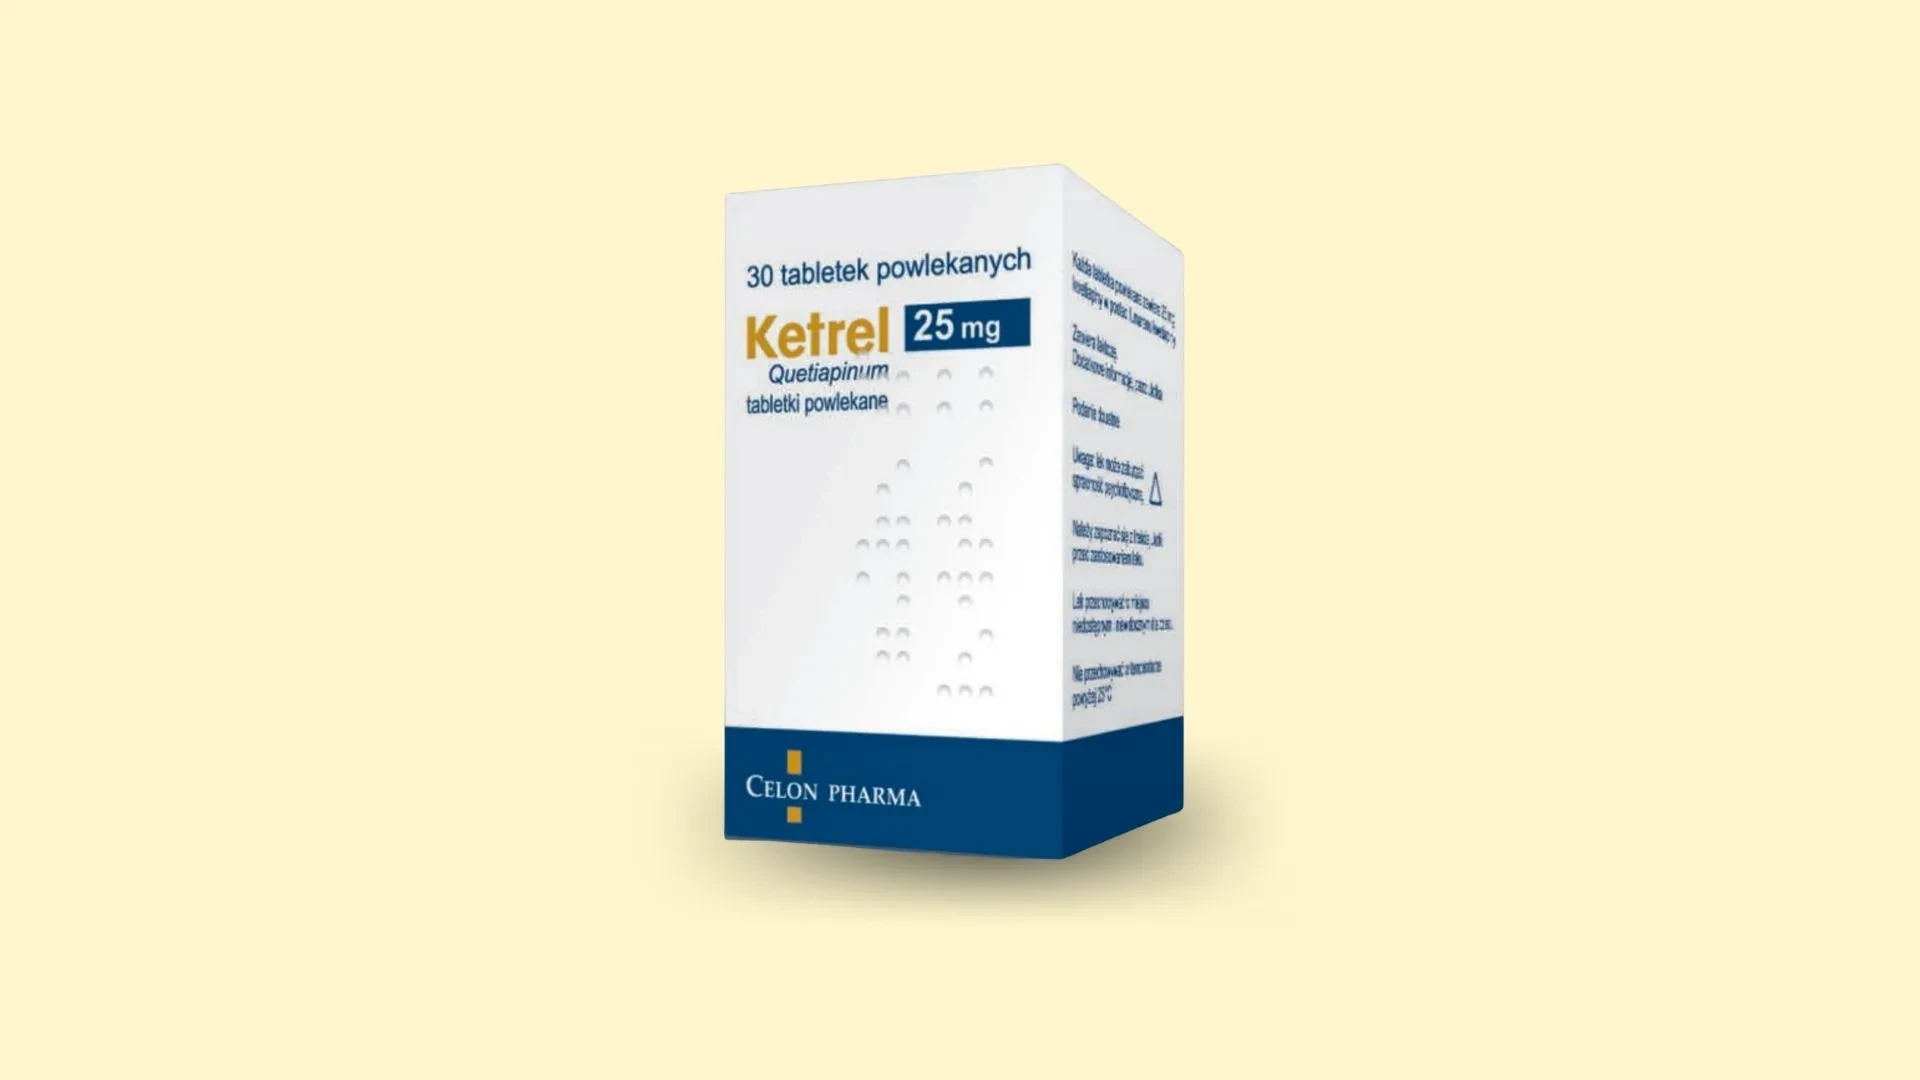 Ketrel - Recepta online - e-Recepta z konsultacją | cena, dawkowanie, przeciwwskazania